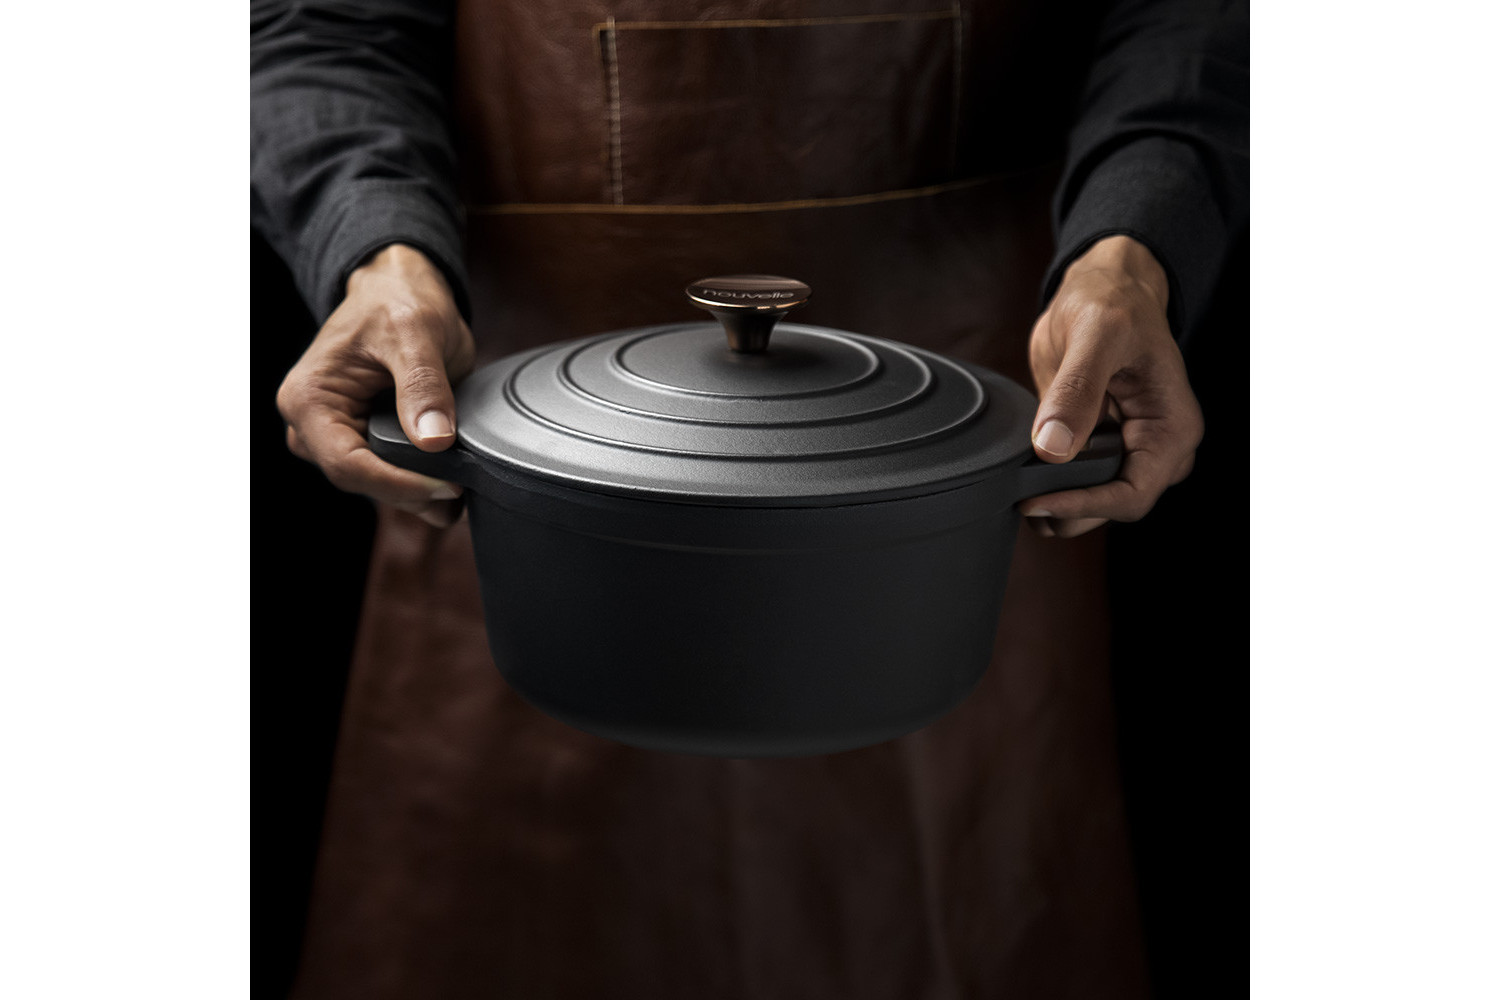 https://www.cielo.co.za/121775-large_default/nouvelle-cast-iron-8-piece-cookware-set-matt-black.jpg